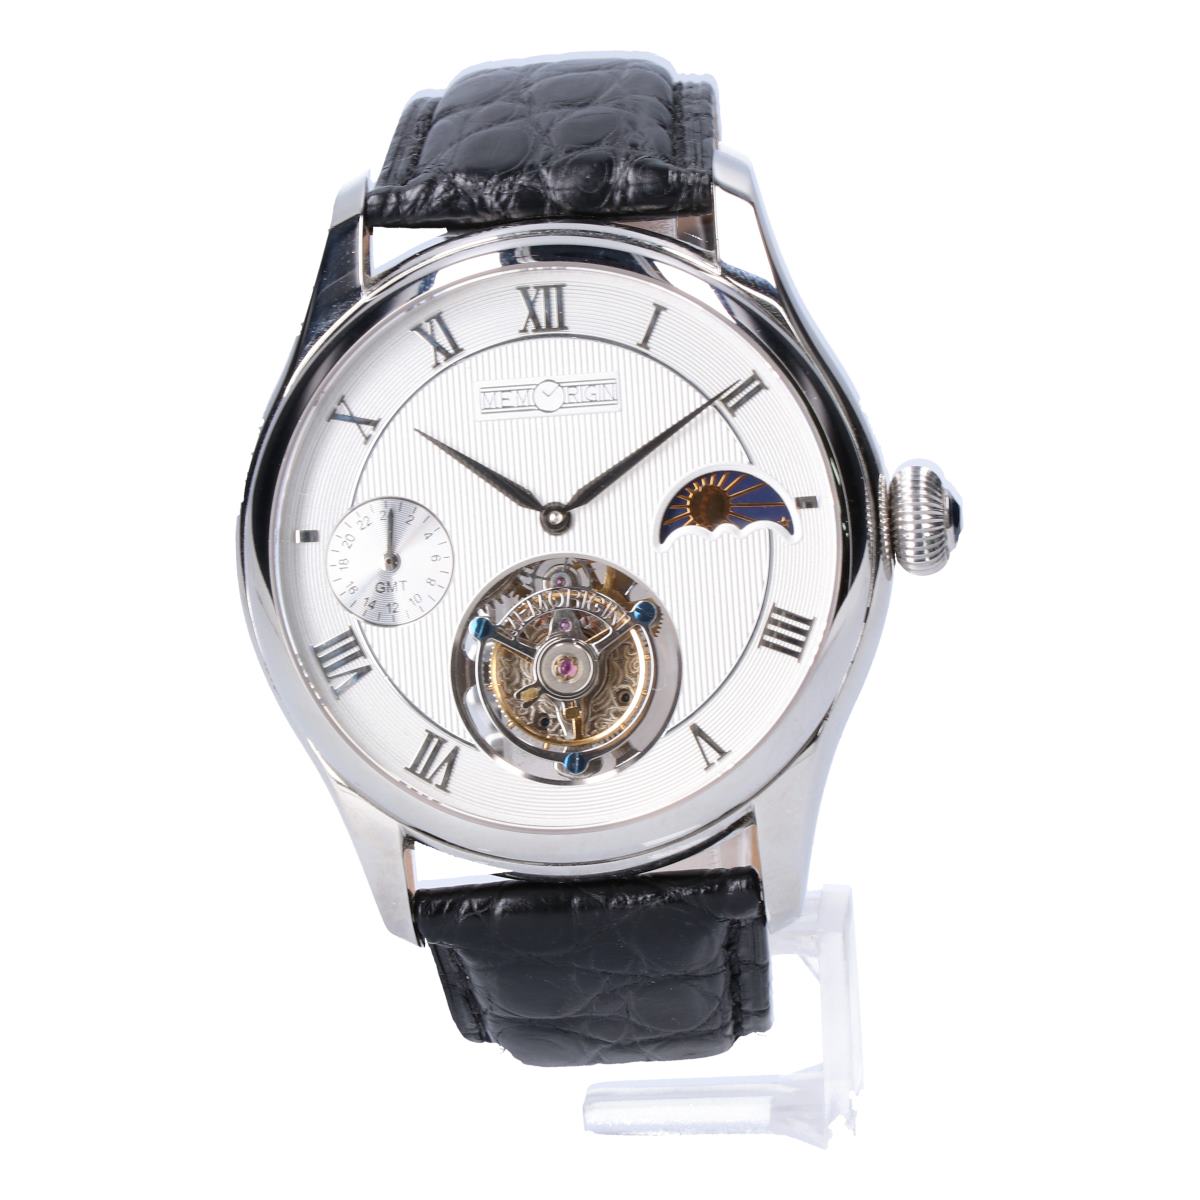 メモリジンのMO0511-SSWHBKR Travelerシリーズ トゥールビヨン ムーンフェイズ GMT針搭載 手巻き時計の買取実績です。